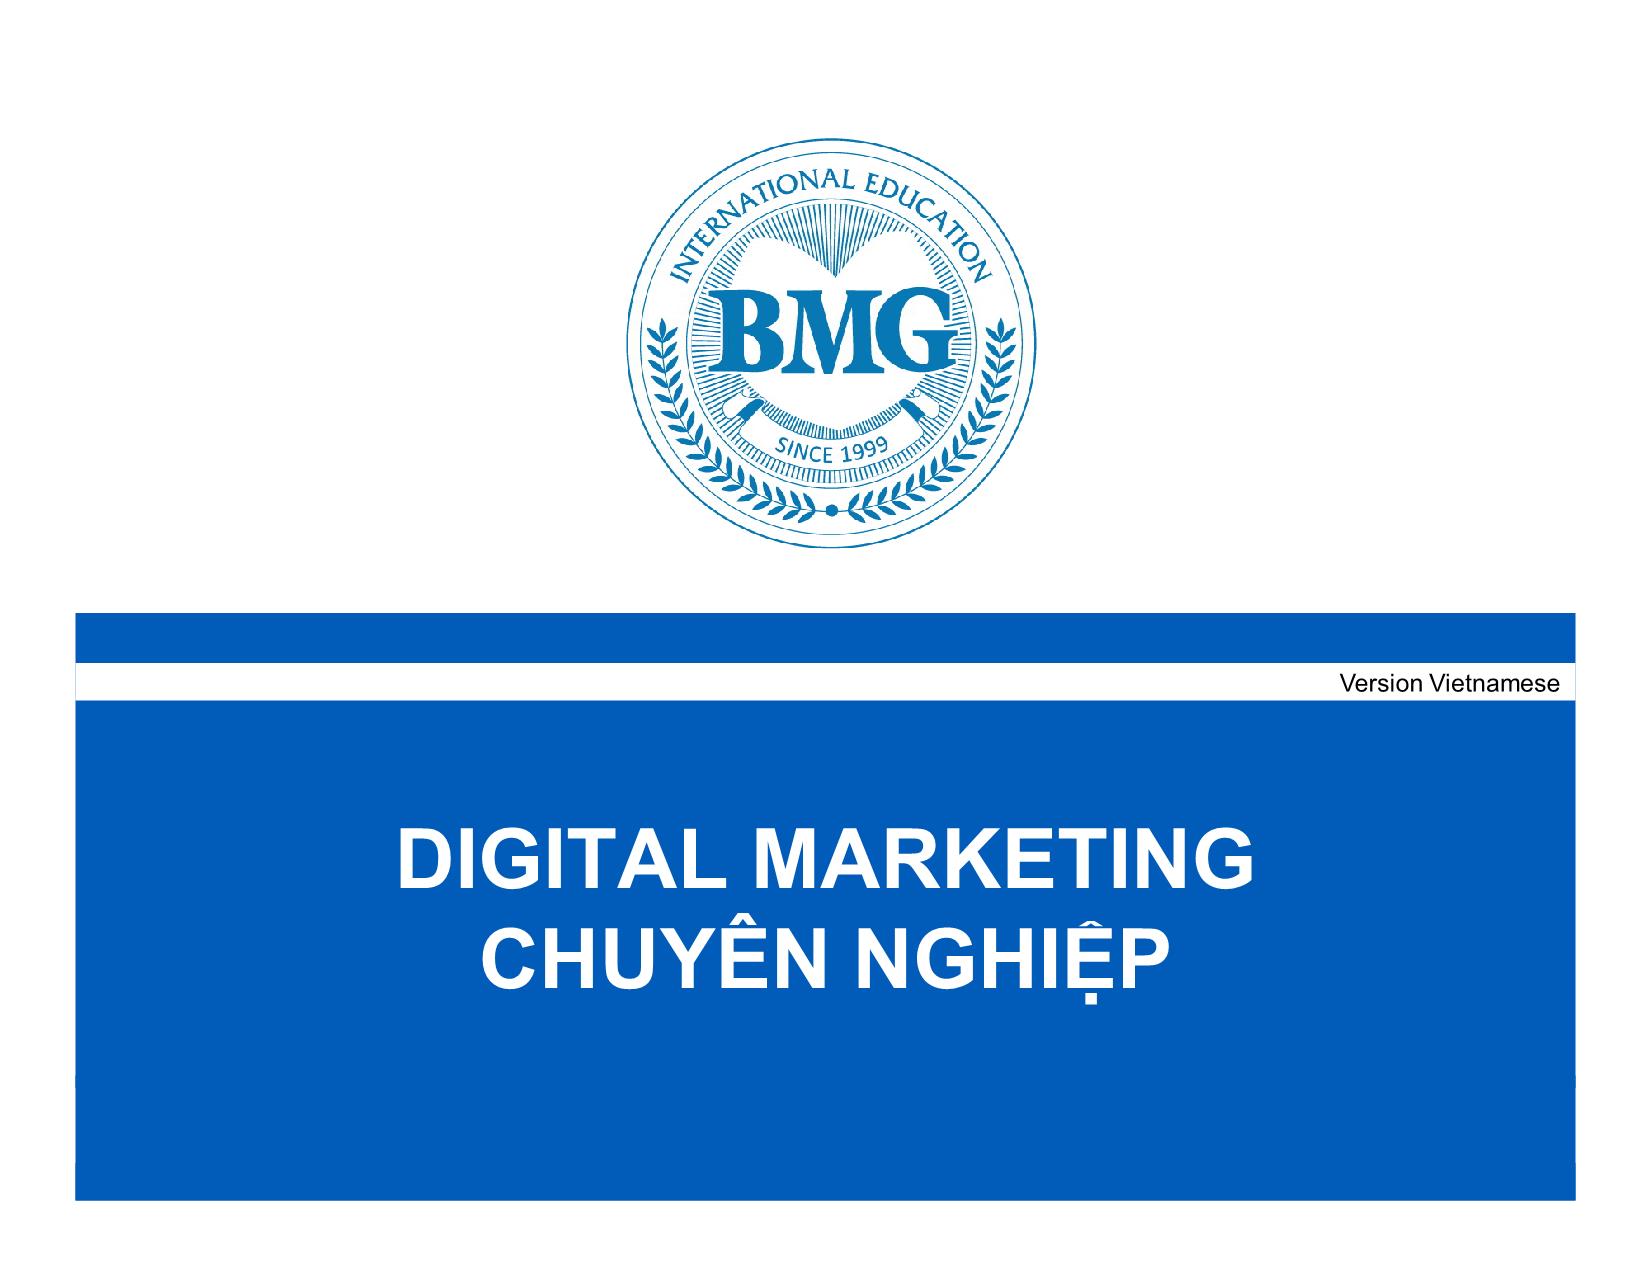 Digital Marketing chuyên nghiệp trang 1